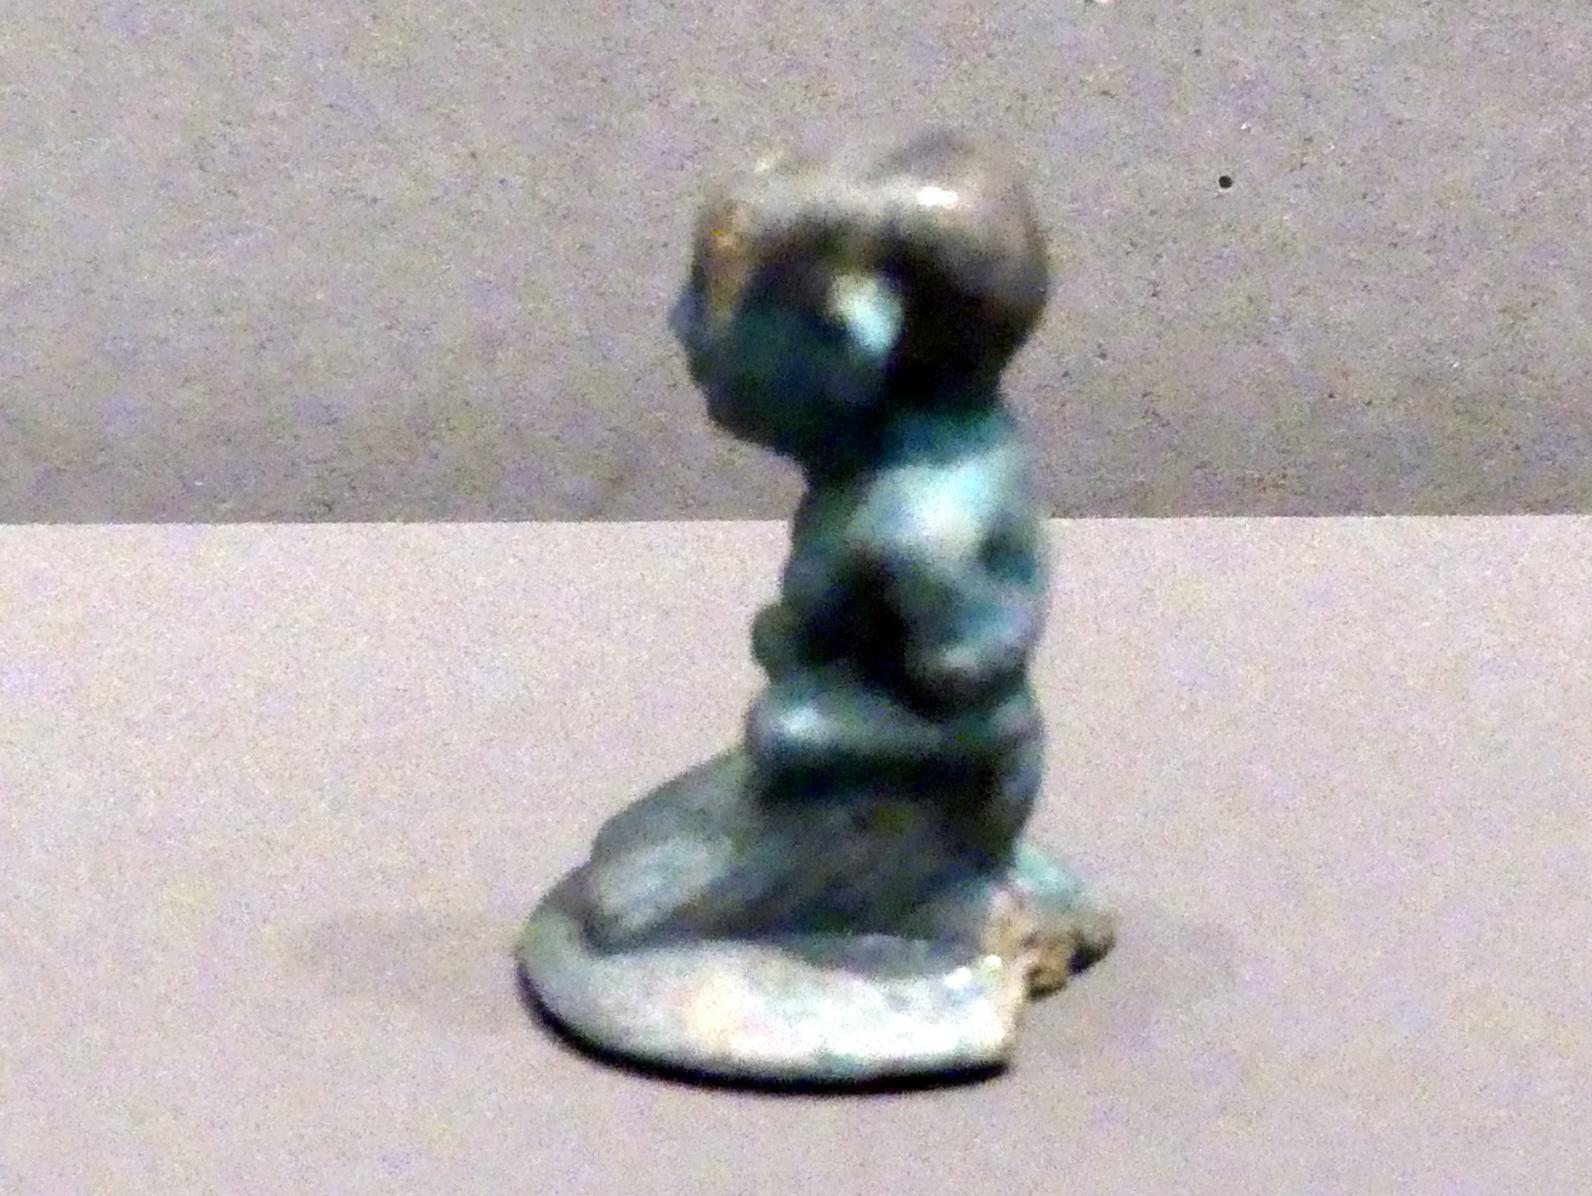 Spielstein in Gestalt eines Gefangenen, Neues Reich, 953 - 887 v. Chr., 1550 - 1180 v. Chr., Bild 1/4